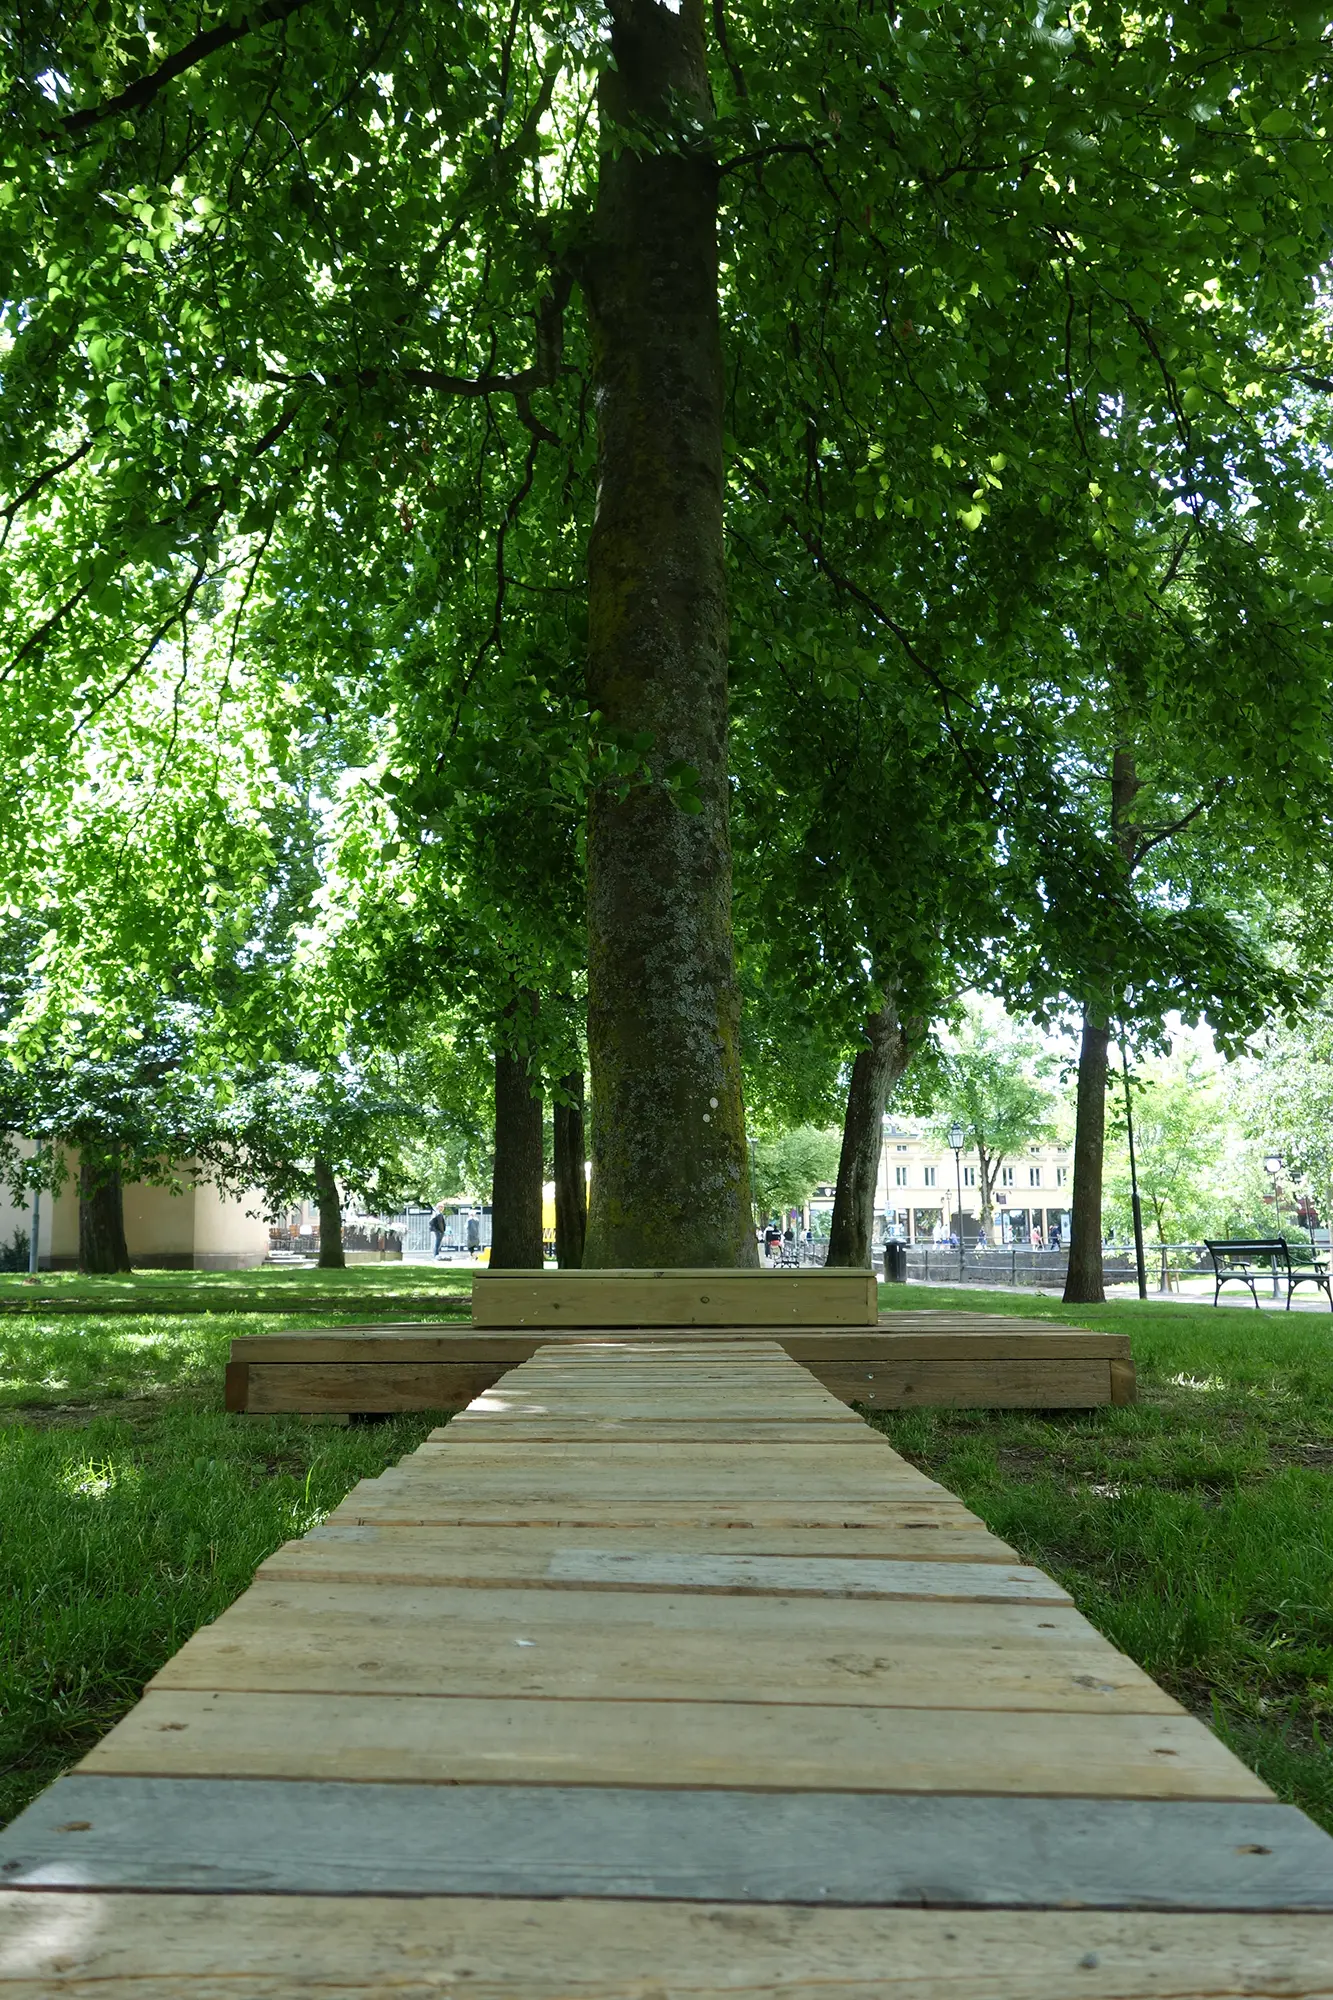 Framför ett träd i en park finns plattform formad som en väg riktad mot trädet. Runt trädet finns en rektangulär upphöjd plattform.